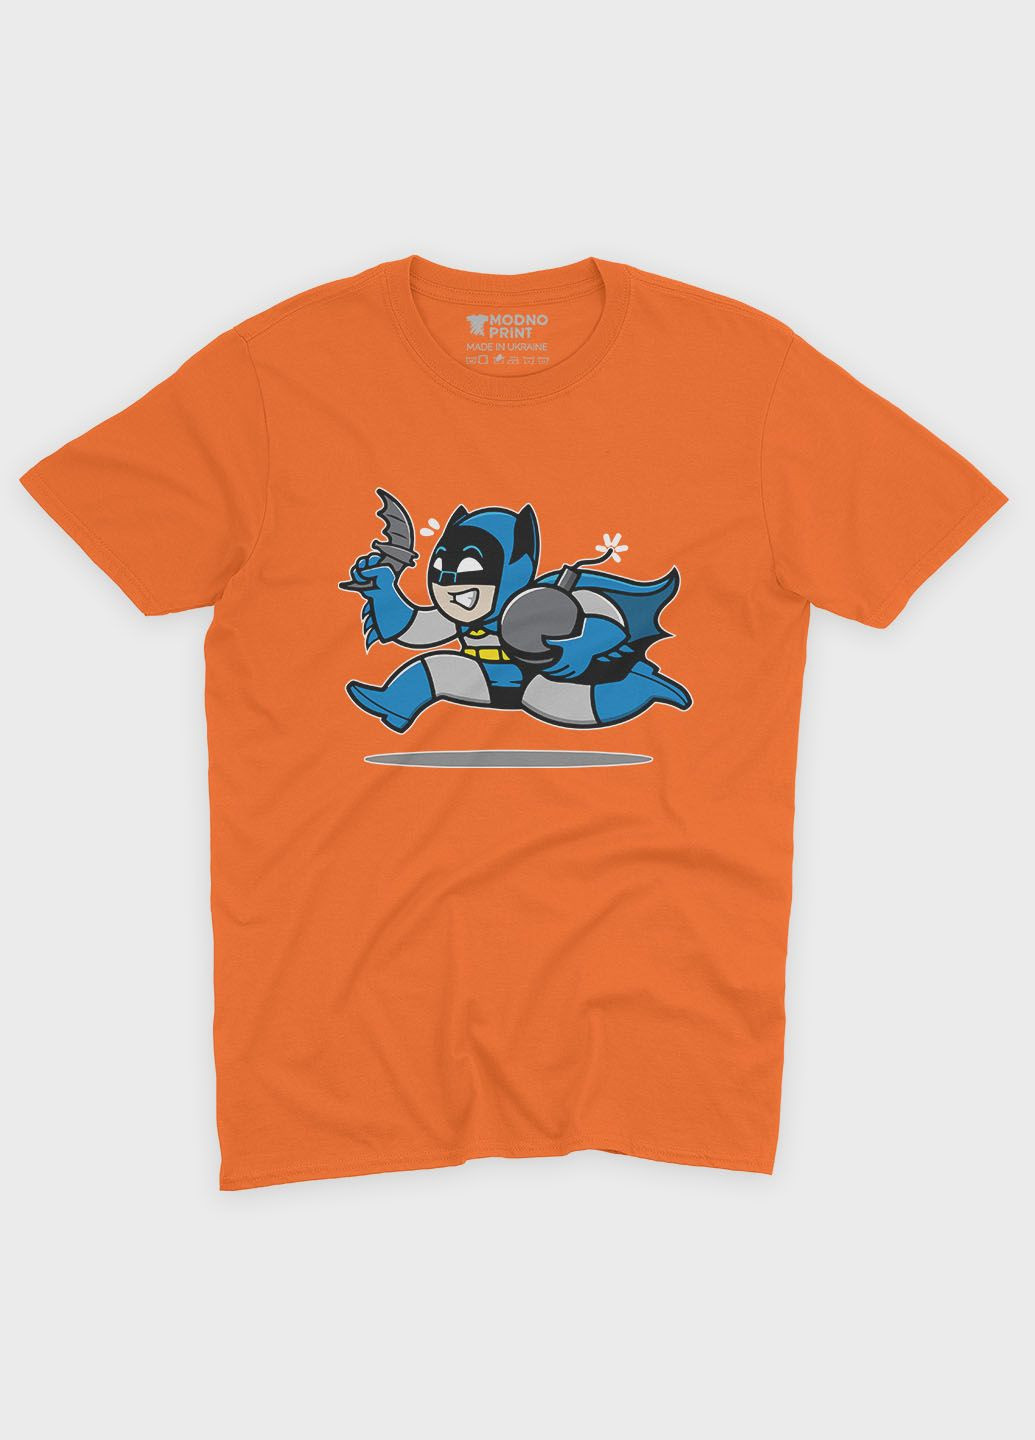 Оранжевая демисезонная футболка для мальчика с принтом супергероя - бэтмен (ts001-1-ora-006-003-033-b) Modno